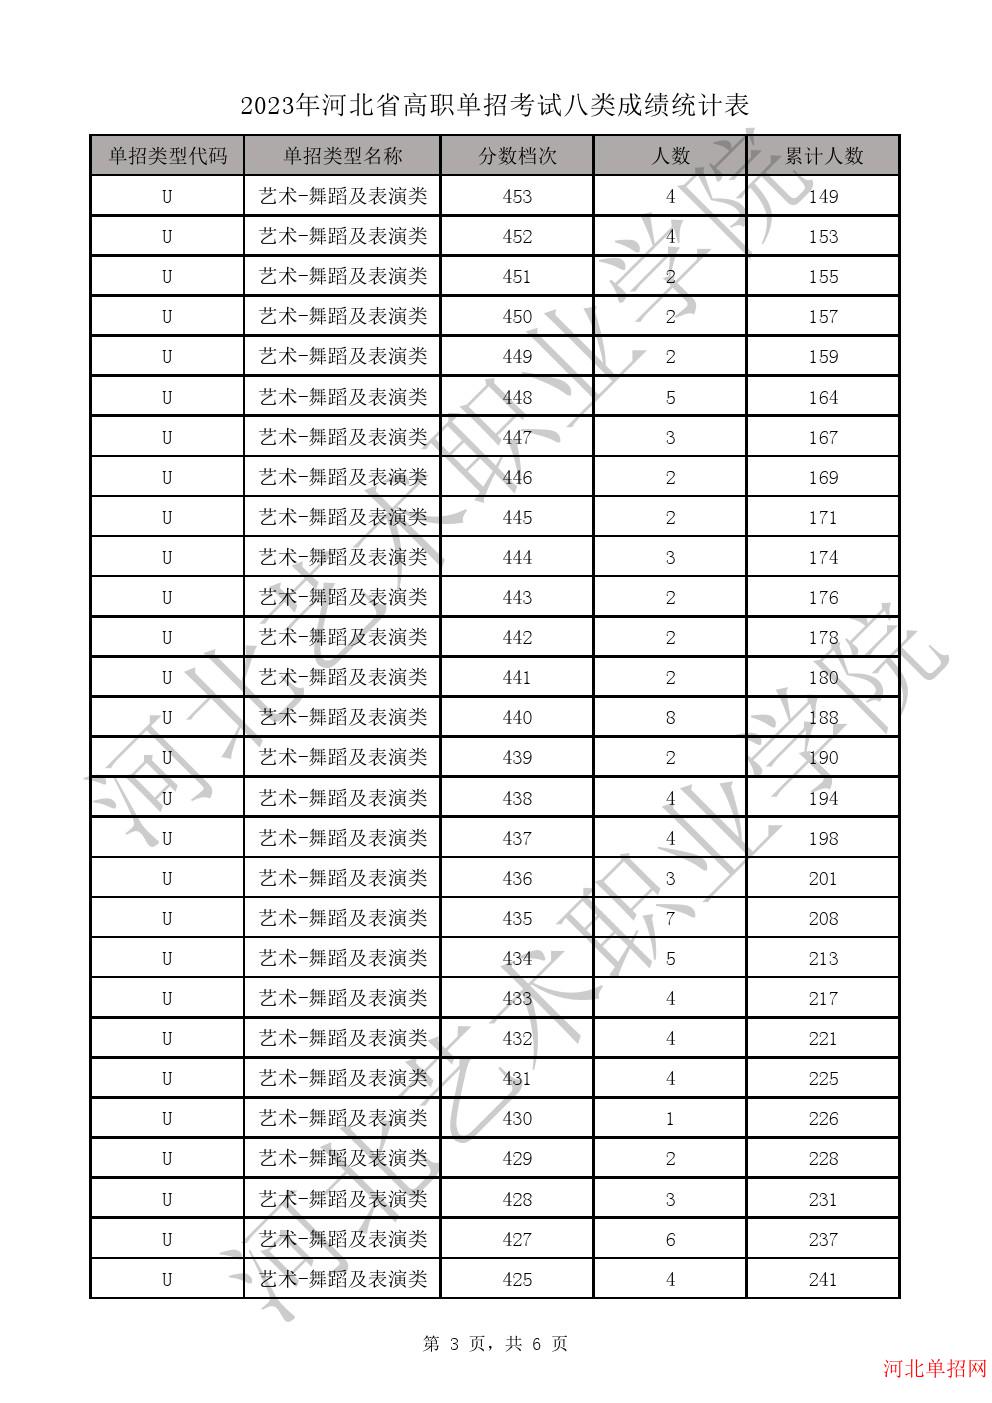 2023年河北省高职单招考试八类成绩统计表-U艺术-舞蹈及表演类一分一档表 图3